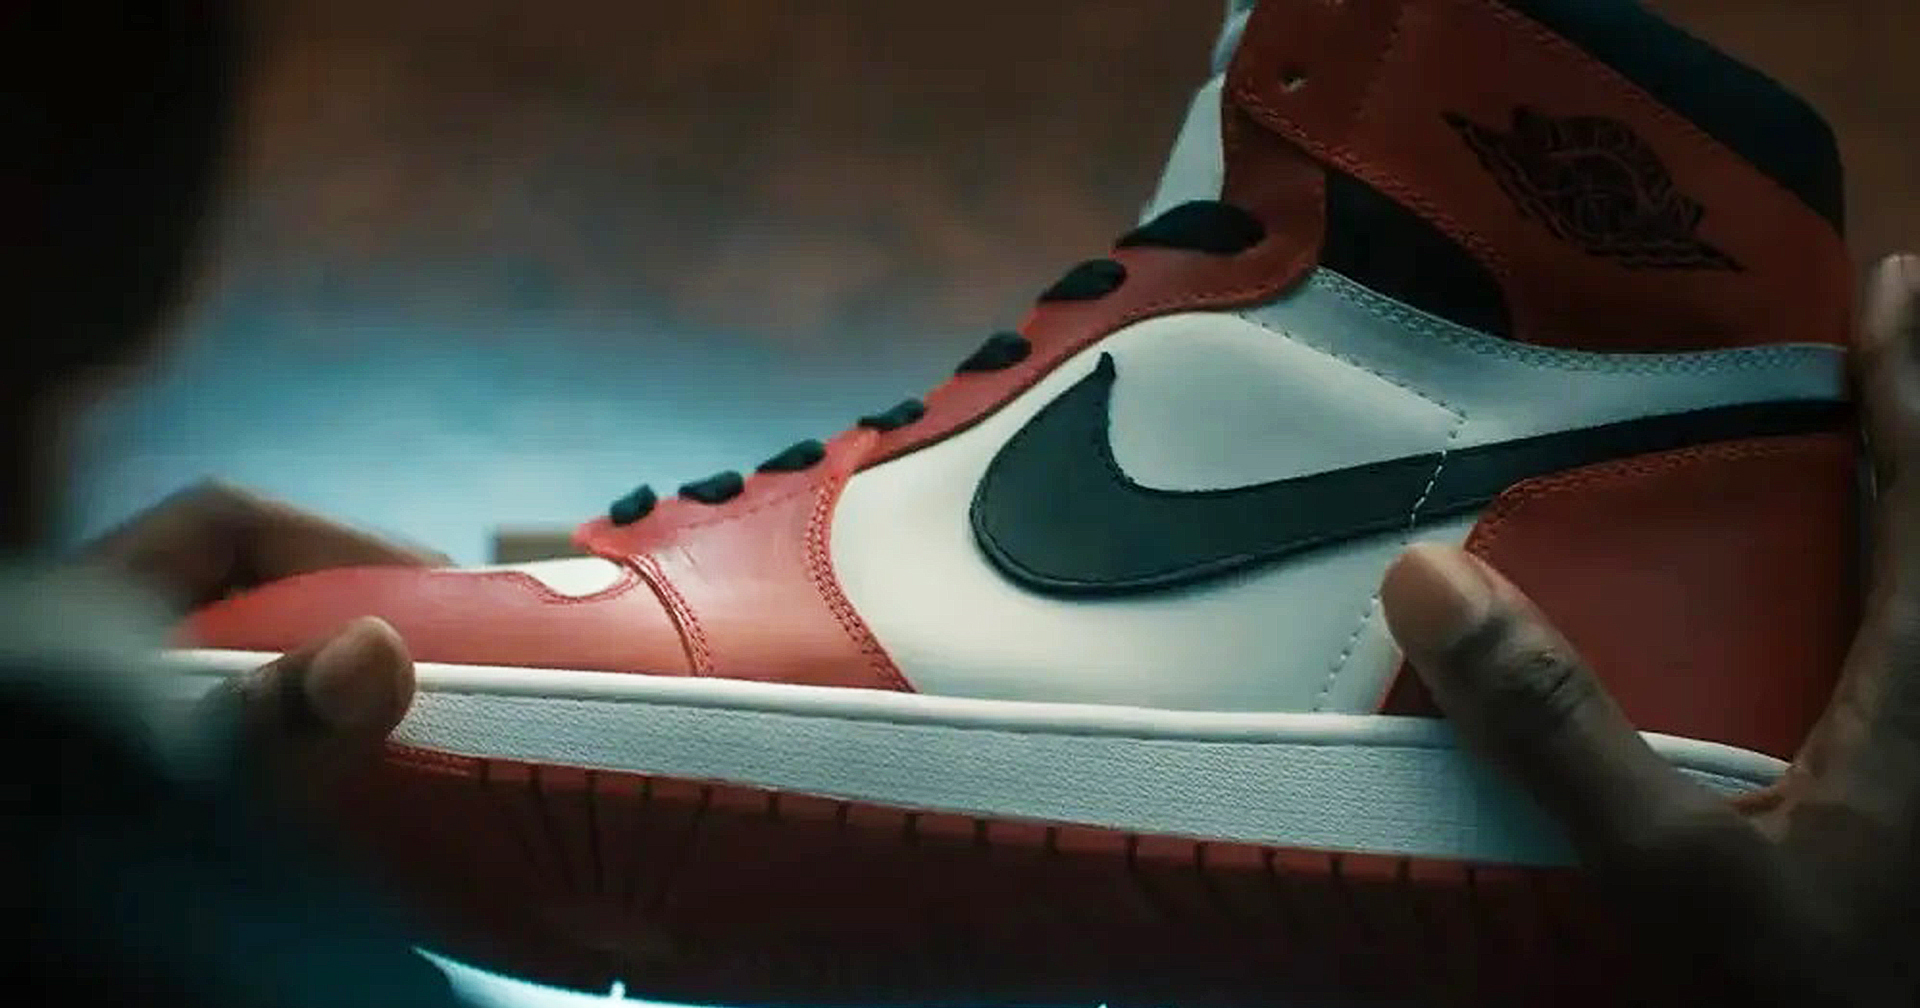 ตัวอย่างแรก ‘Air’ : หนังเล่าเรื่อง Nike ดึง Michael Jordan มาเซ็นสัญญา ที่สาวกสนีกเกอร์เฝ้ารอ